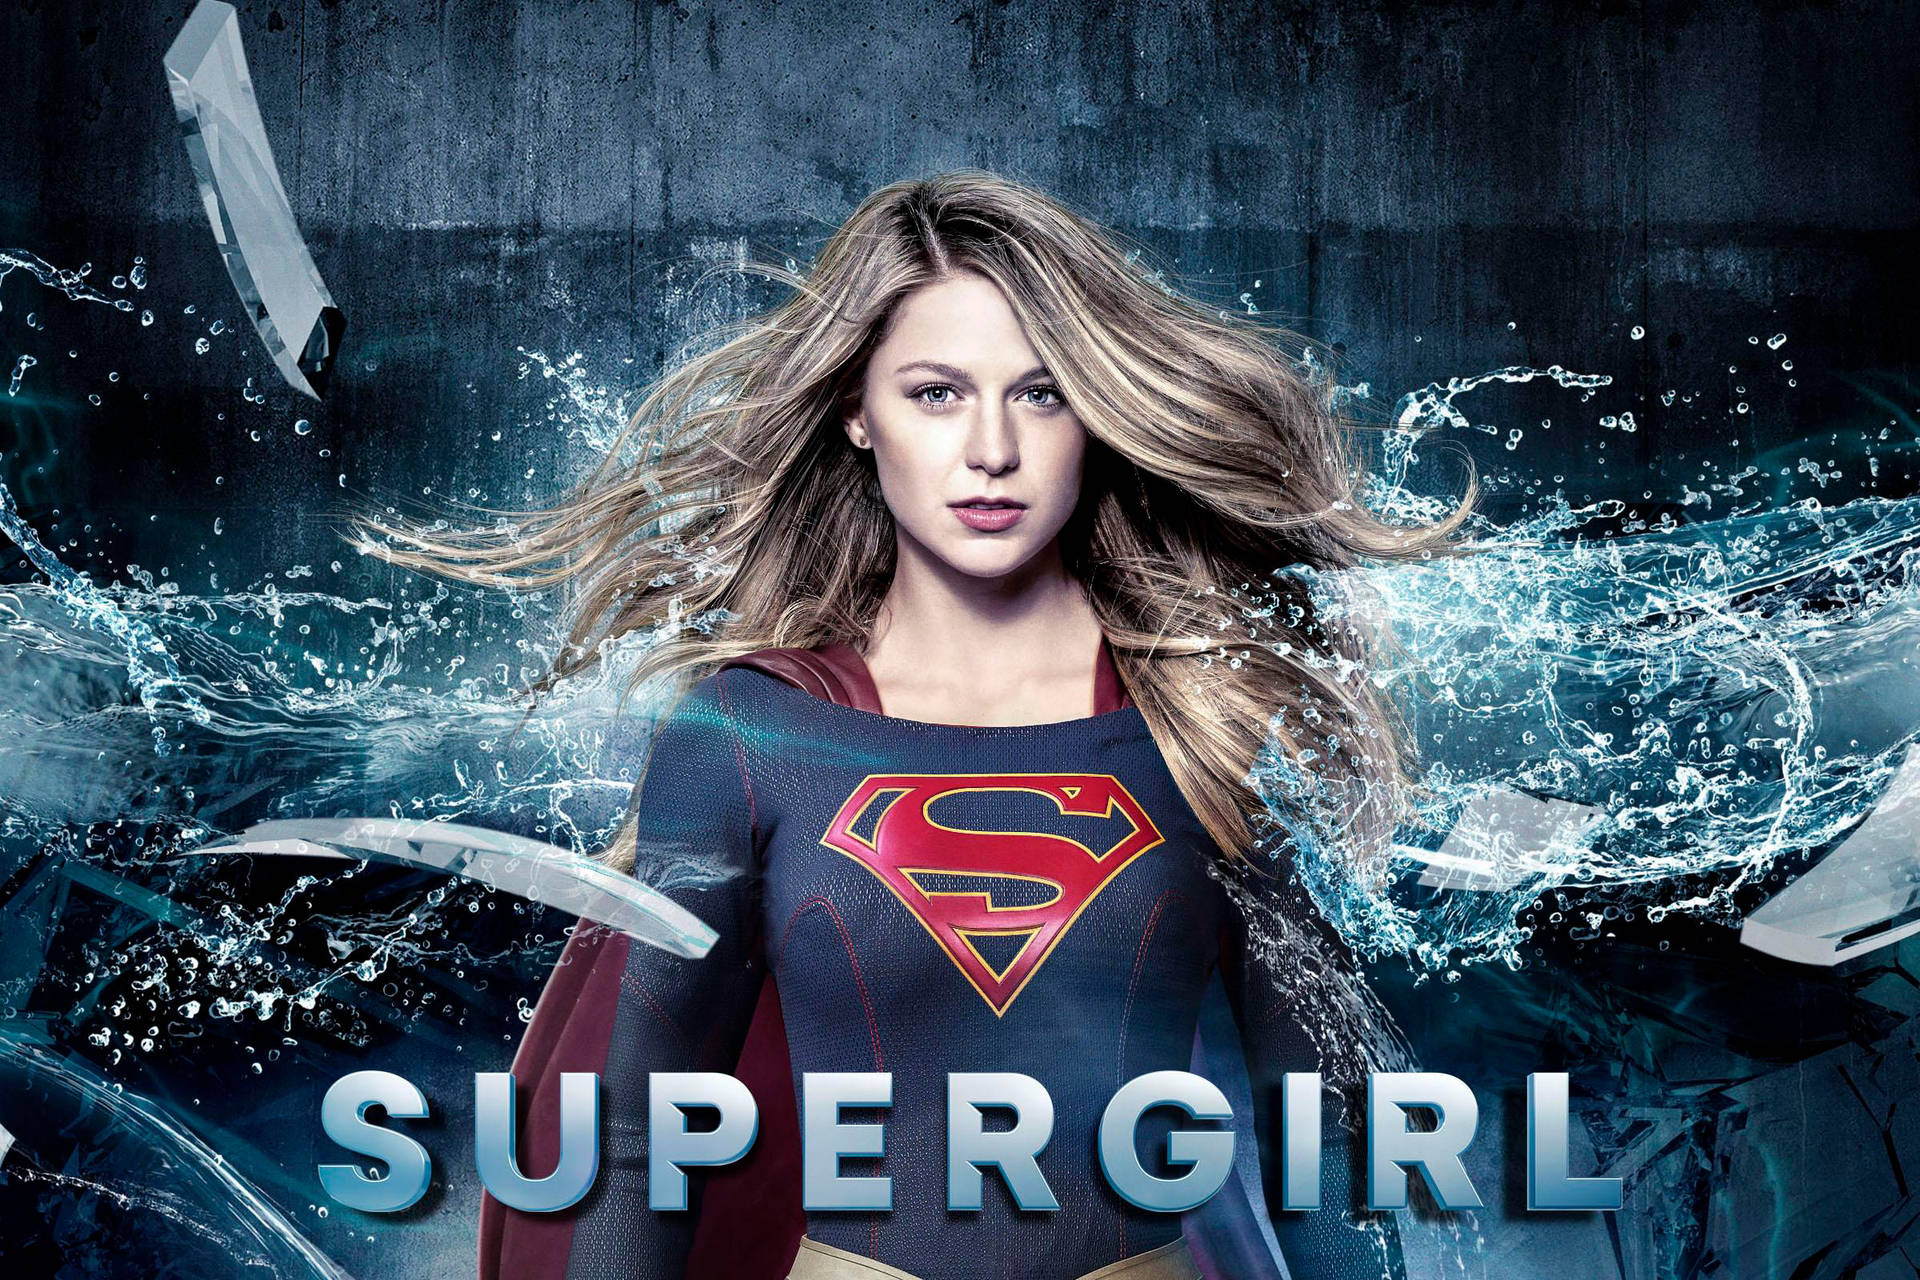 Supergirl Series Digital Cover Wallpaper